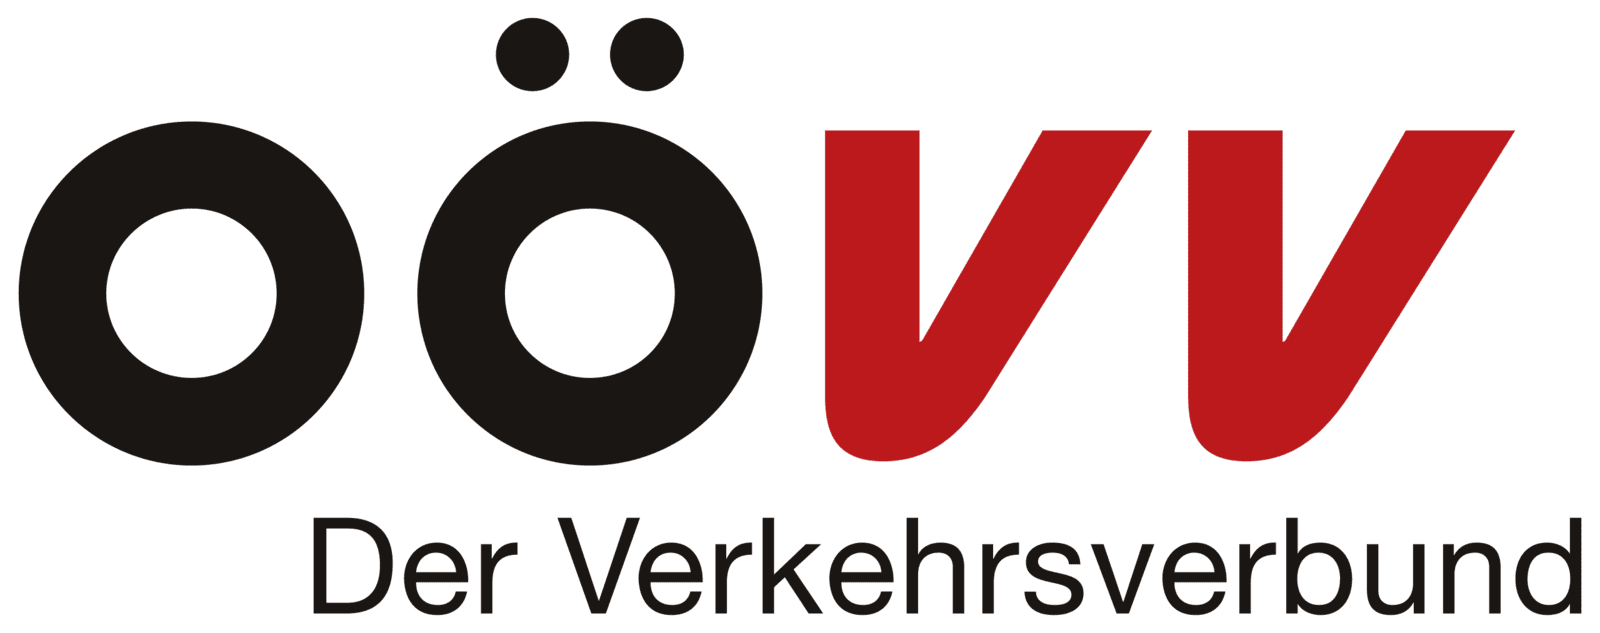 OÖ Verkehrsverbund-Organisations GmbH Nfg. & Co KG